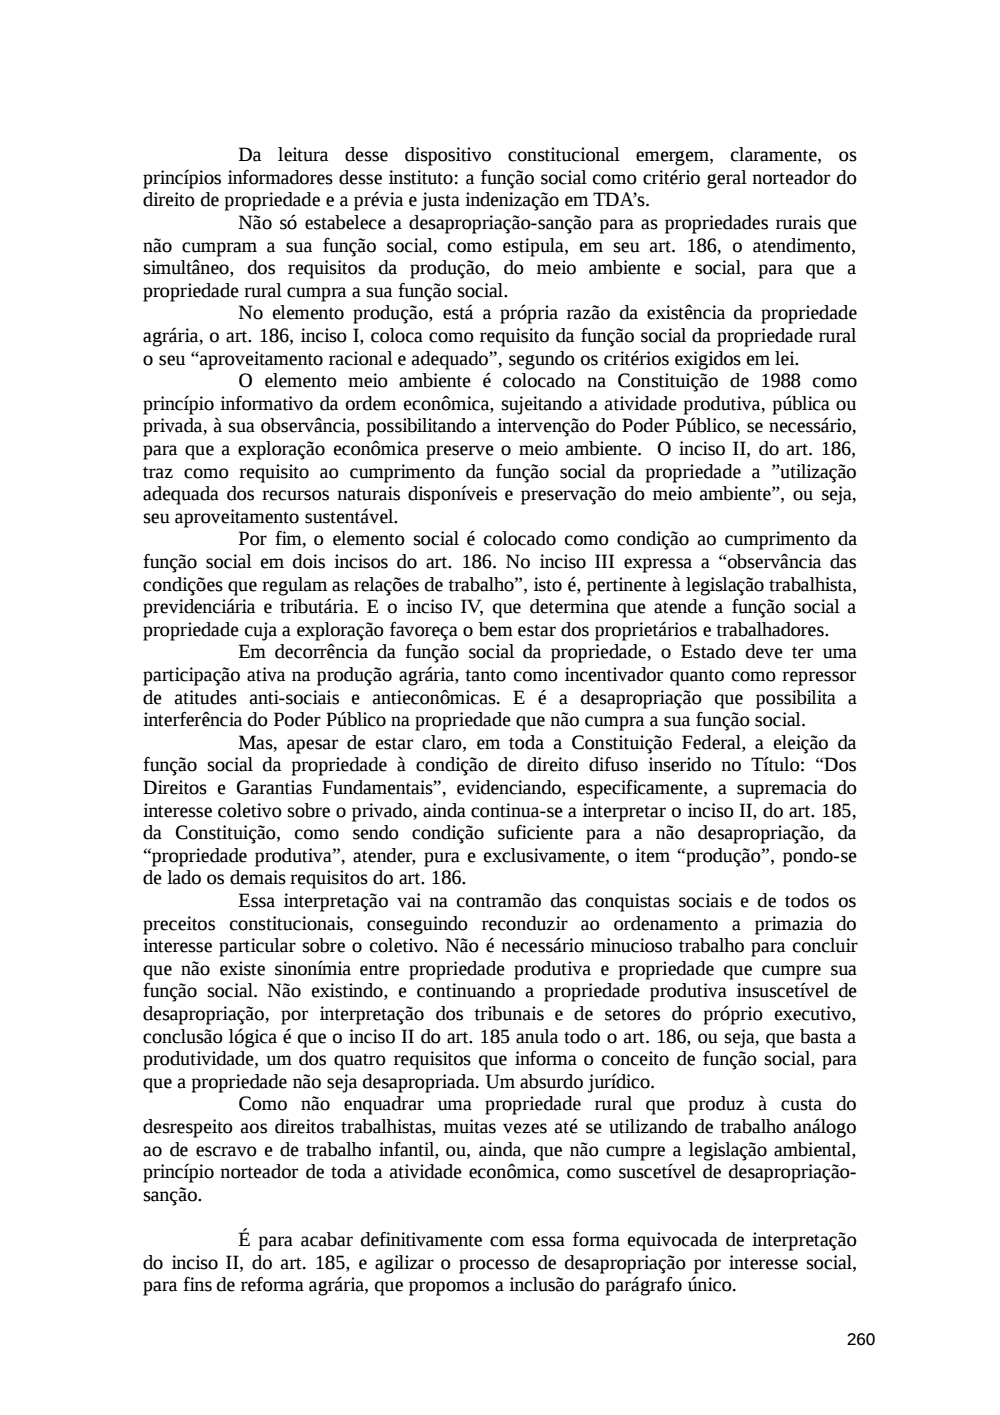 Page 260 from Relatório final da comissão